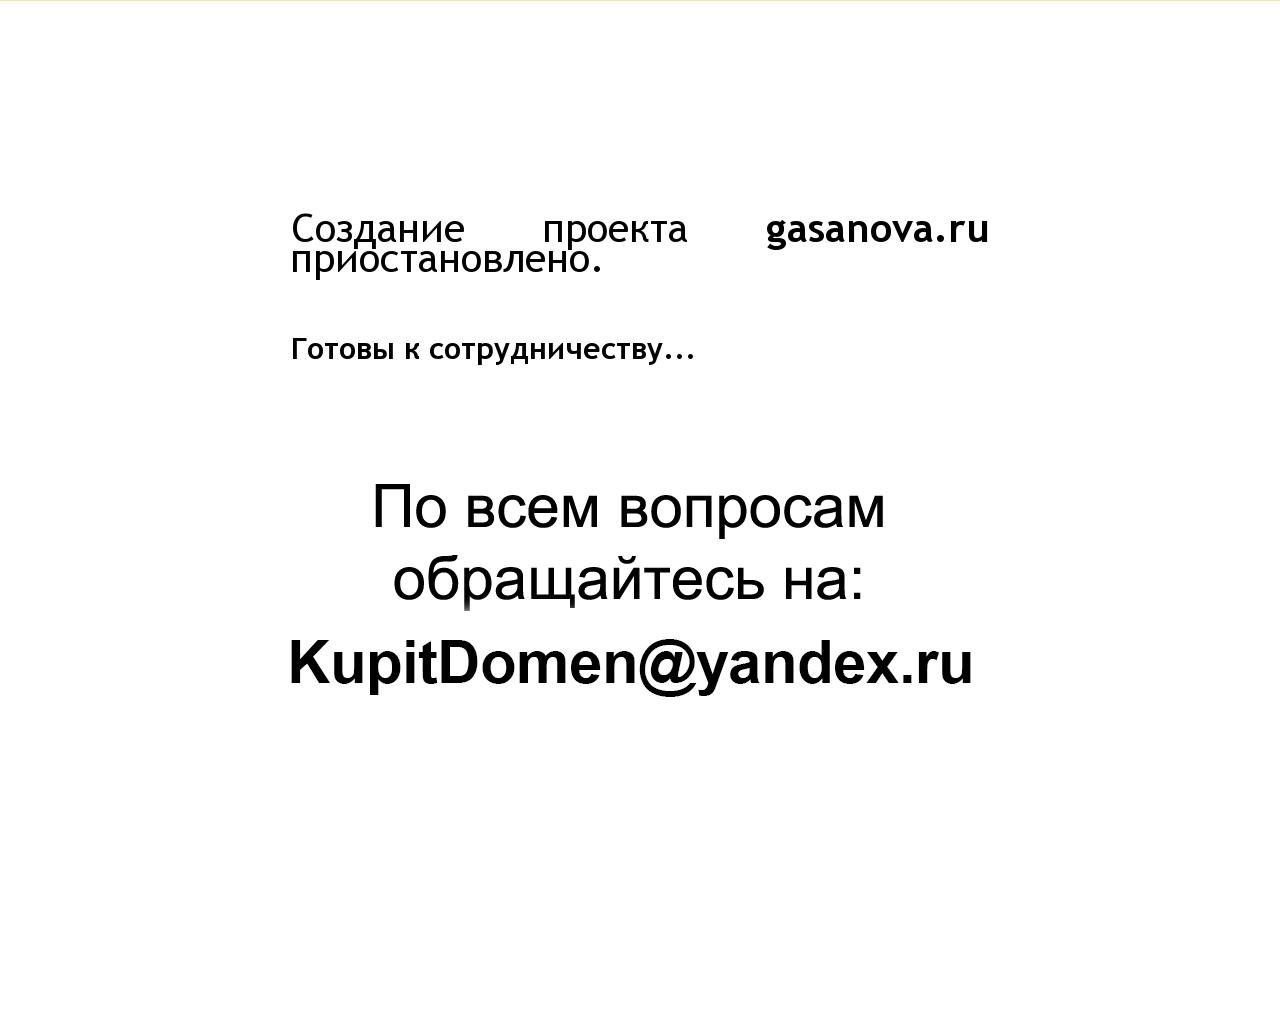 Изображение сайта gasanova.ru в разрешении 1280x1024